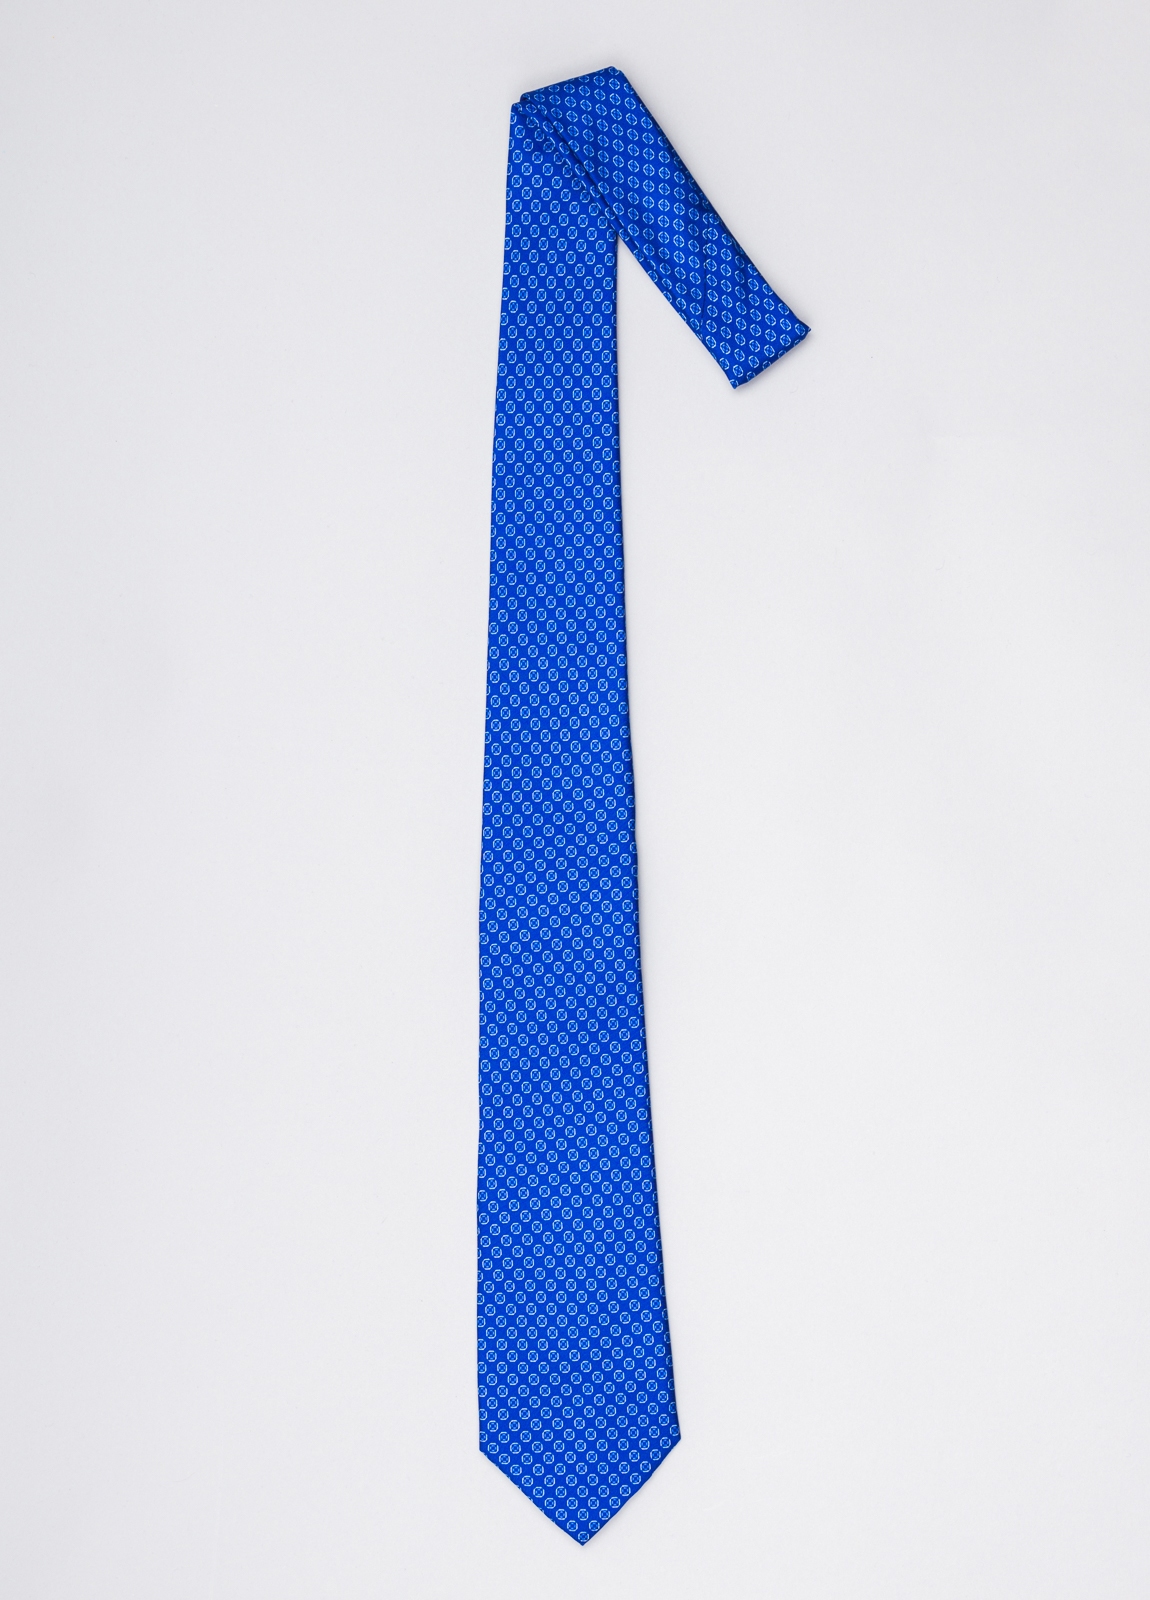 Corbata FUREST COLECCIÓN color azulón con dibujo geométrico - Ítem1